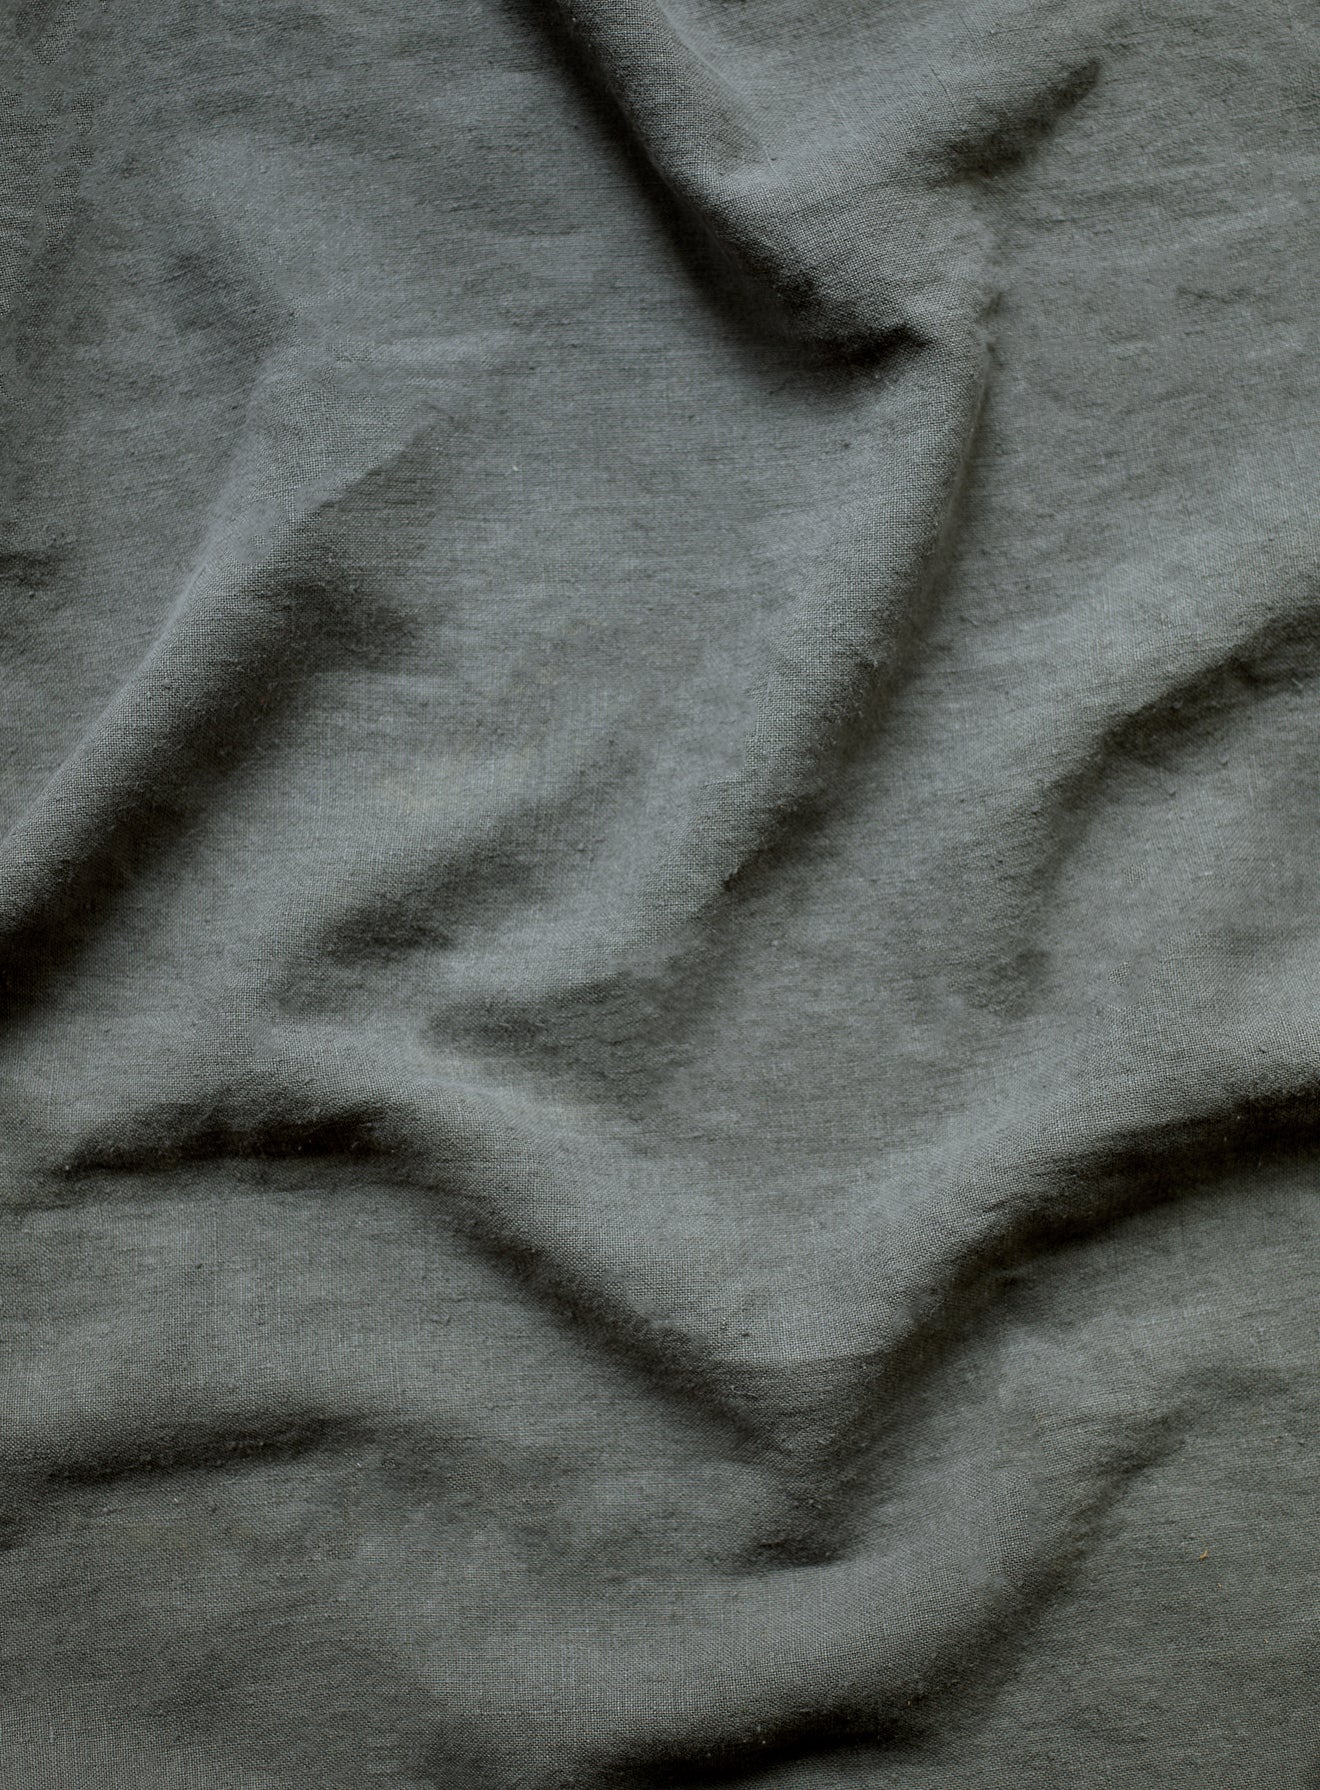 Rustic Linen, Leaden Grey